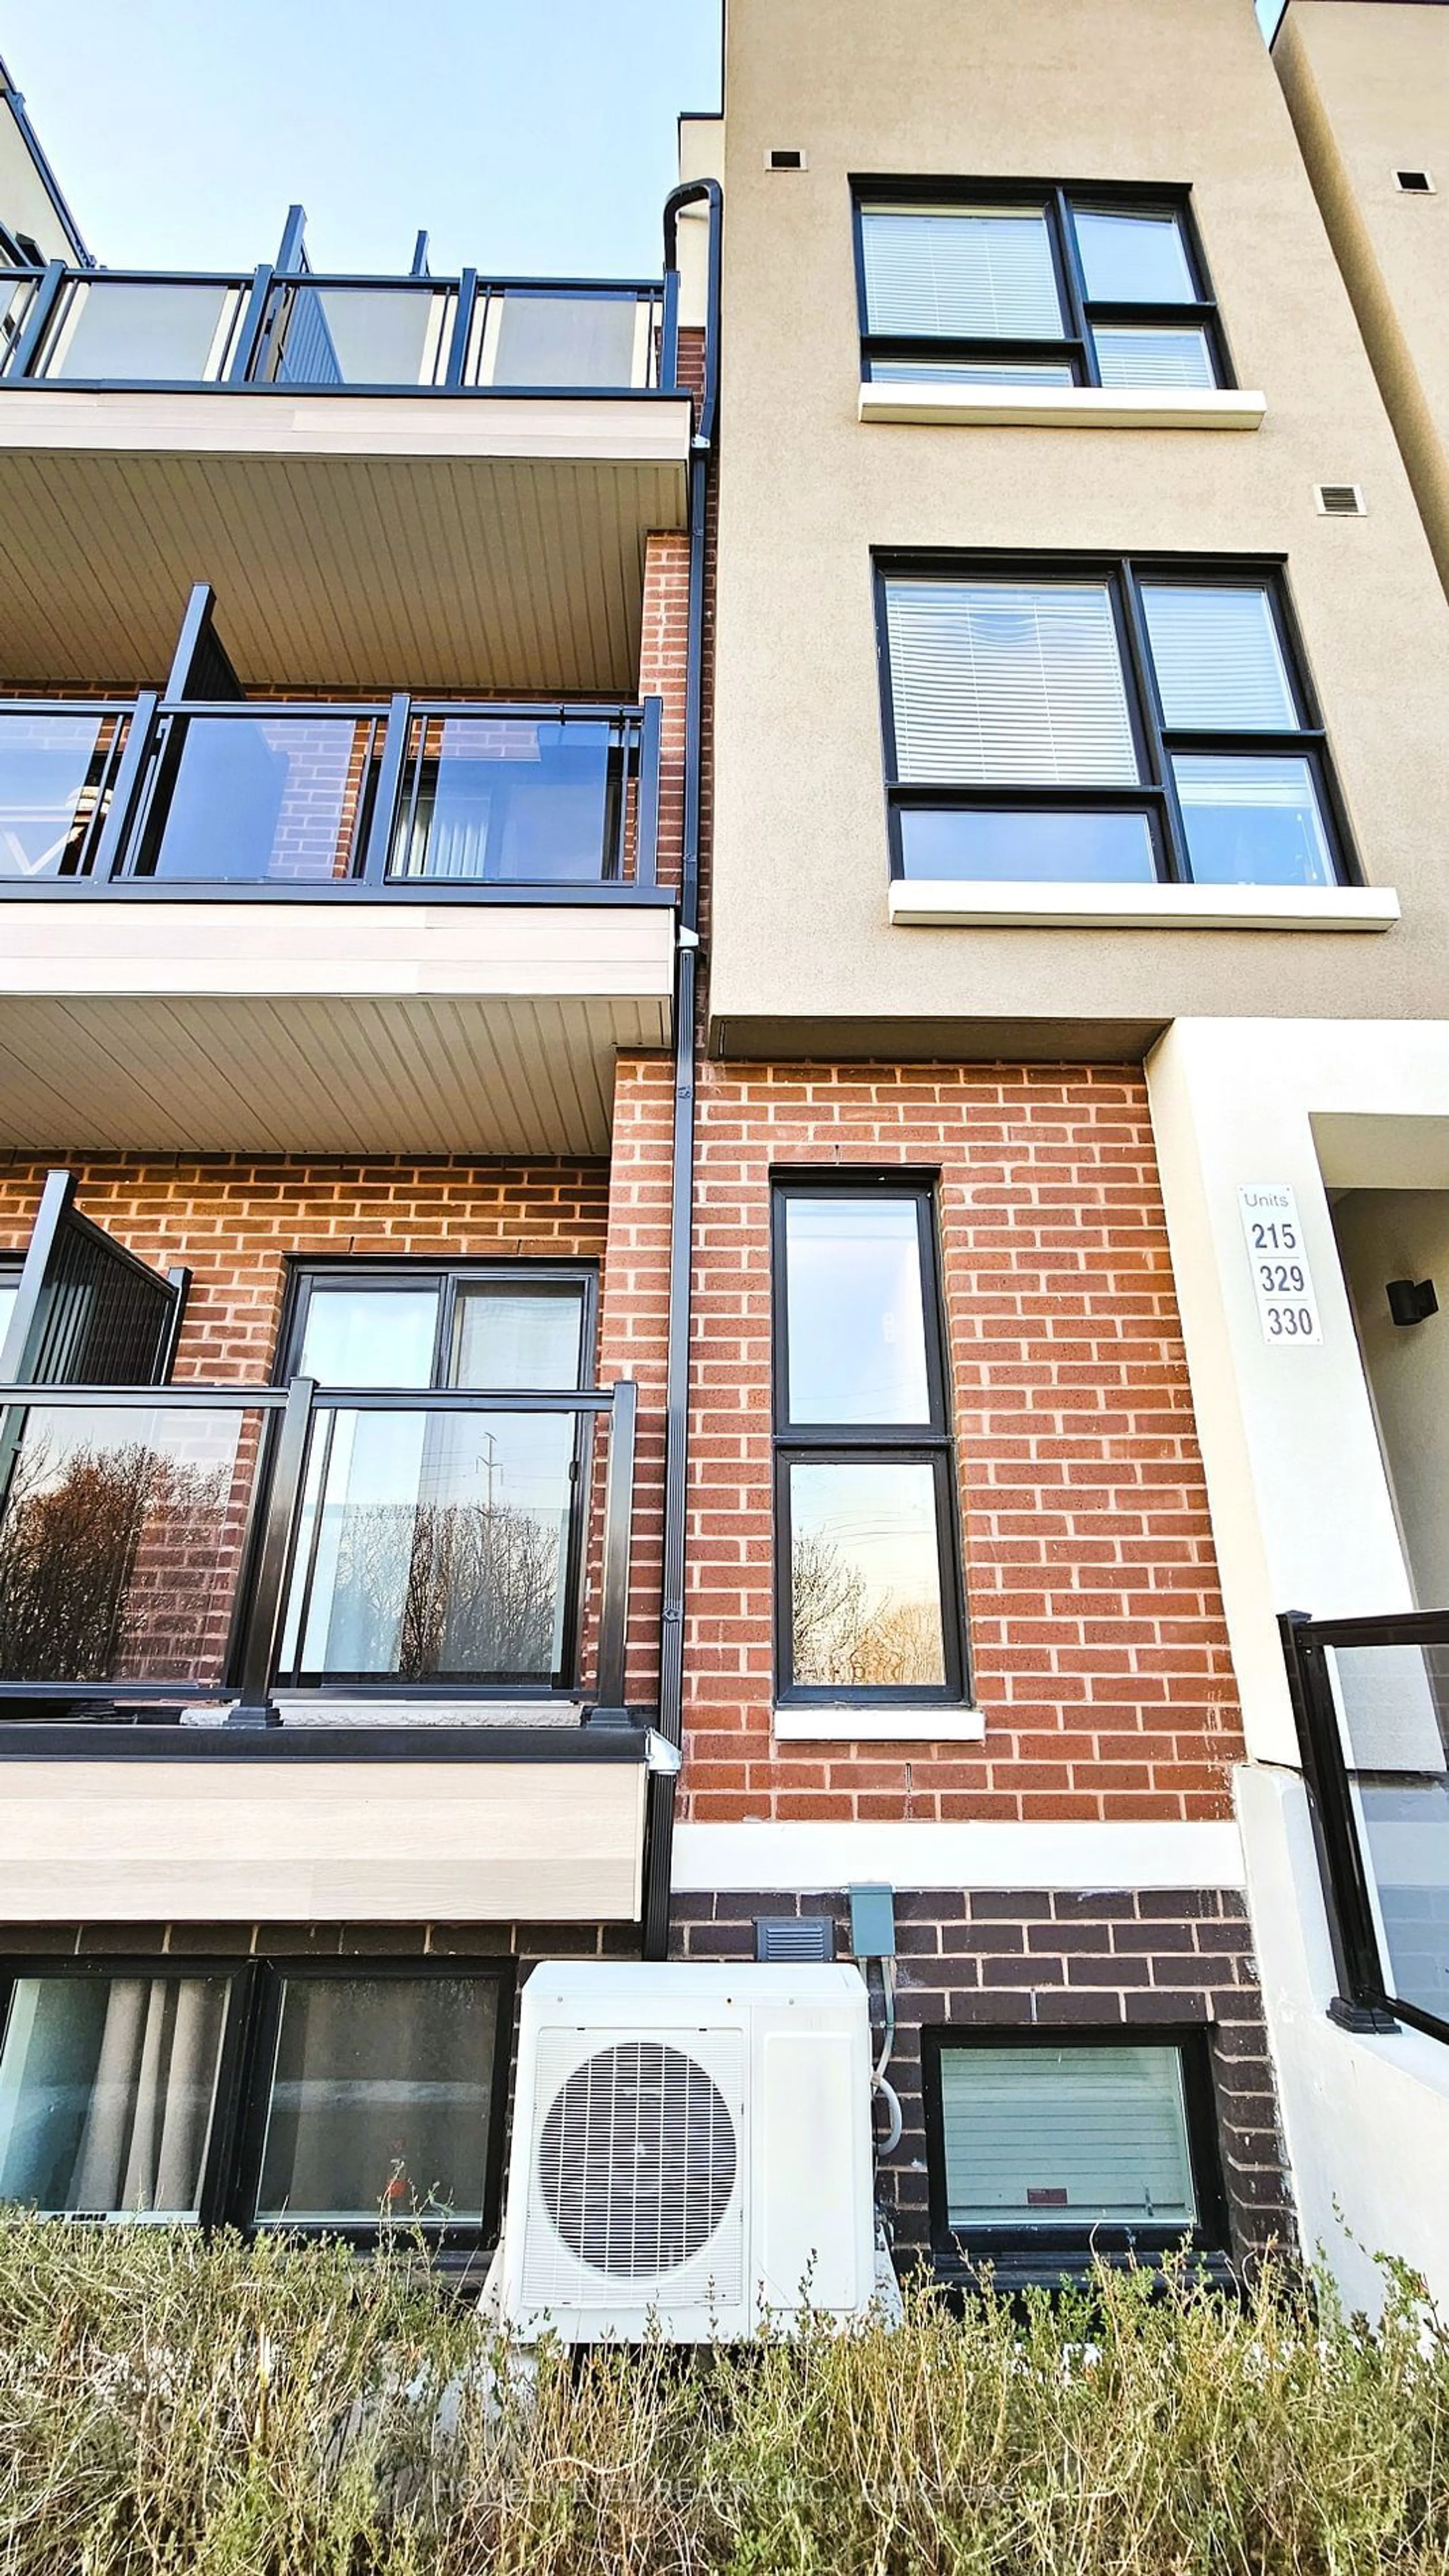 Home with brick exterior material for 510 Kingbird Grve #215, Toronto Ontario M1B 0E4